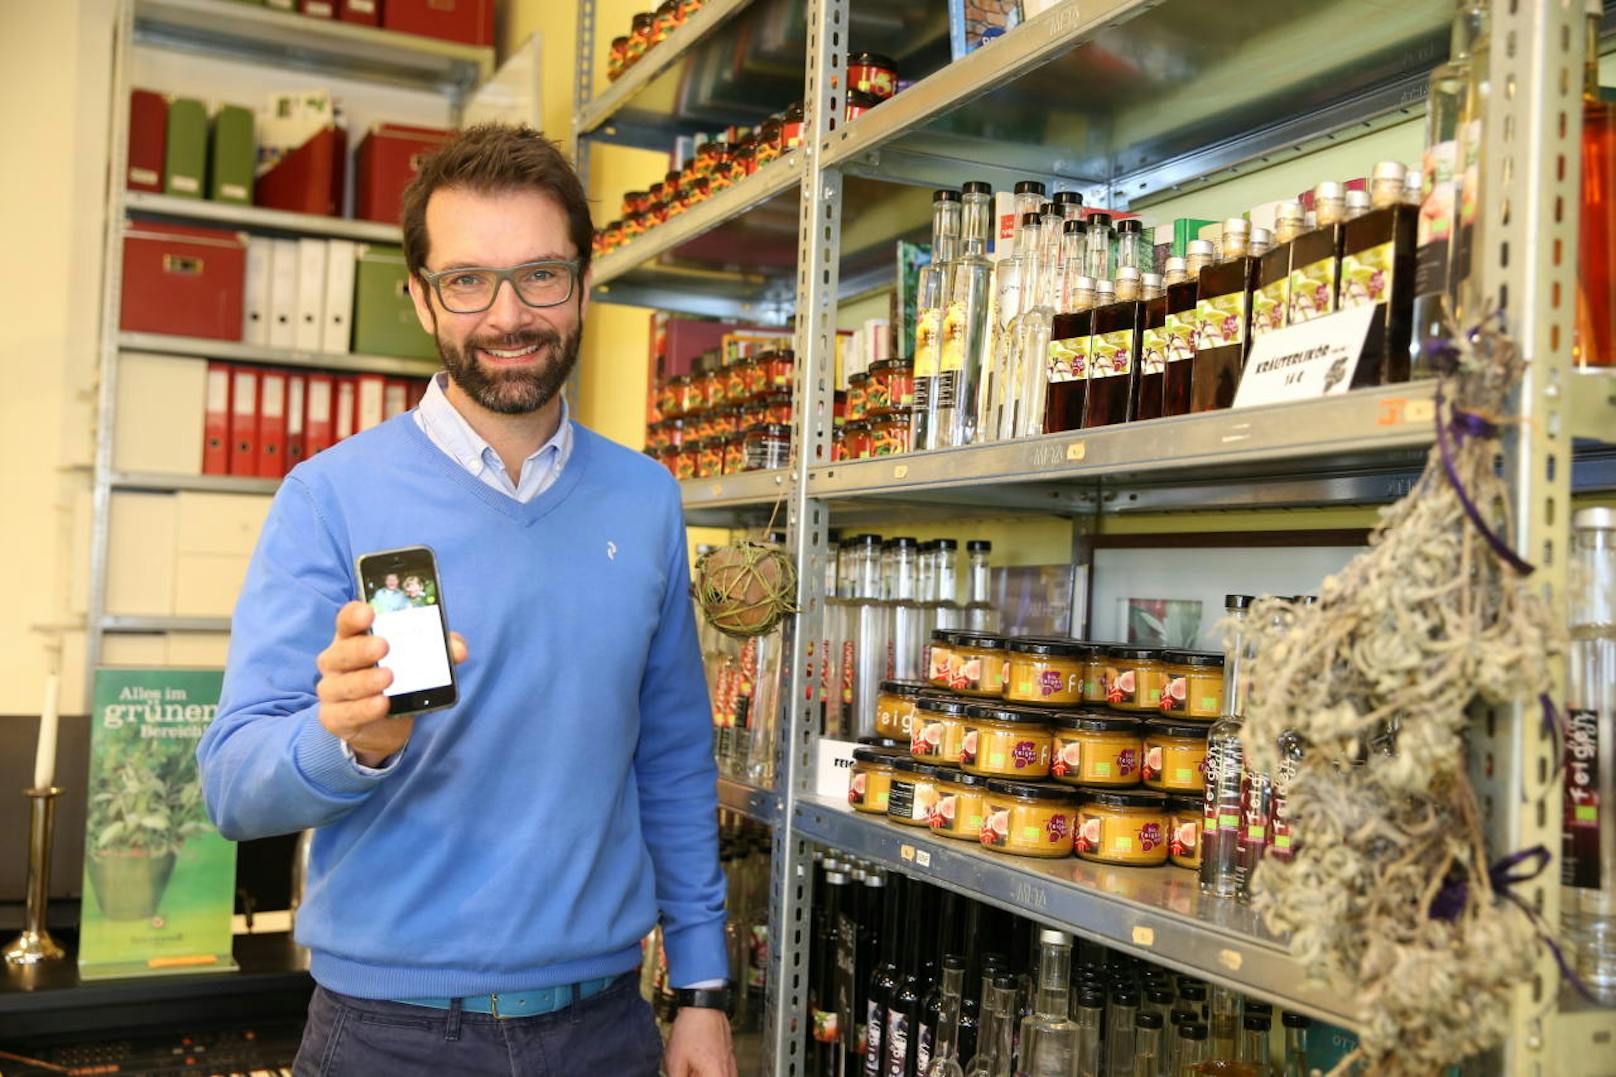 "Oft weiß man gar nicht, dass so viel Gutes direkt vor der Nase liegt", erklärt "AbHofLaden"-Geschäftsführer Oliver Nitz. Mit der App will man Konsumenten und Betriebe näher zusammenbringen.